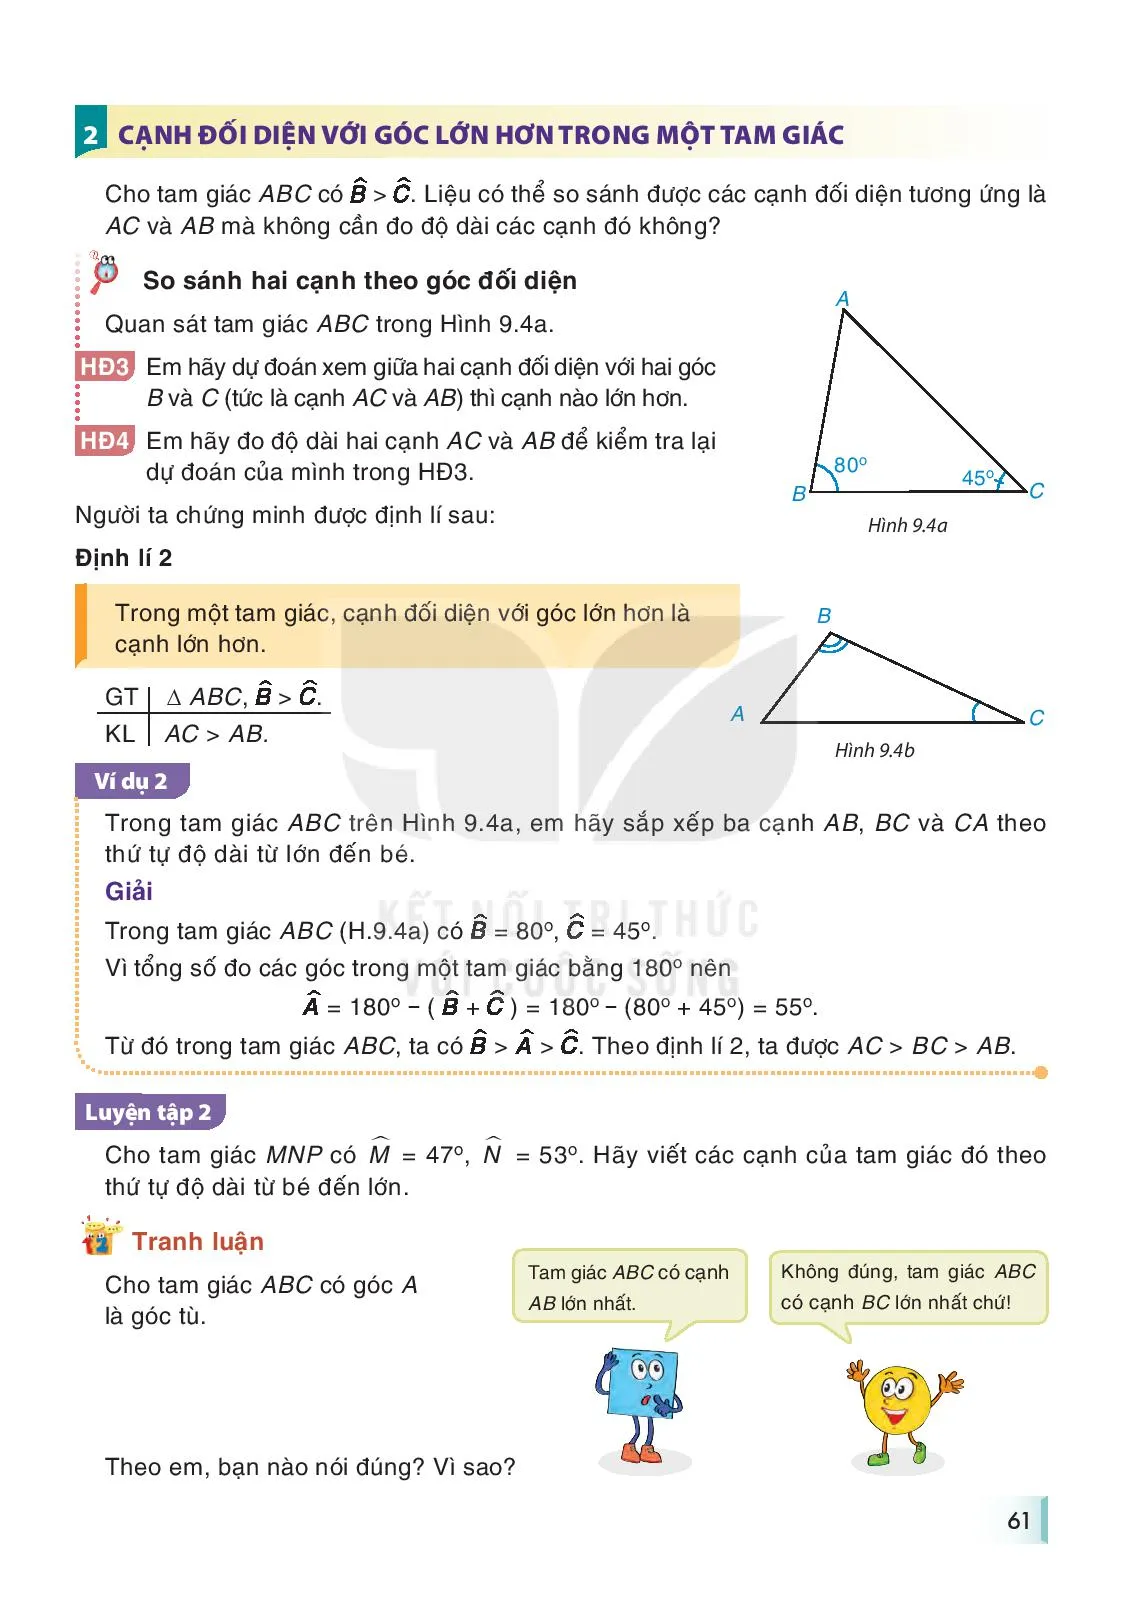 Bài 31. Quan hệ giữa góc và cạnh đối diện trong một tam giác